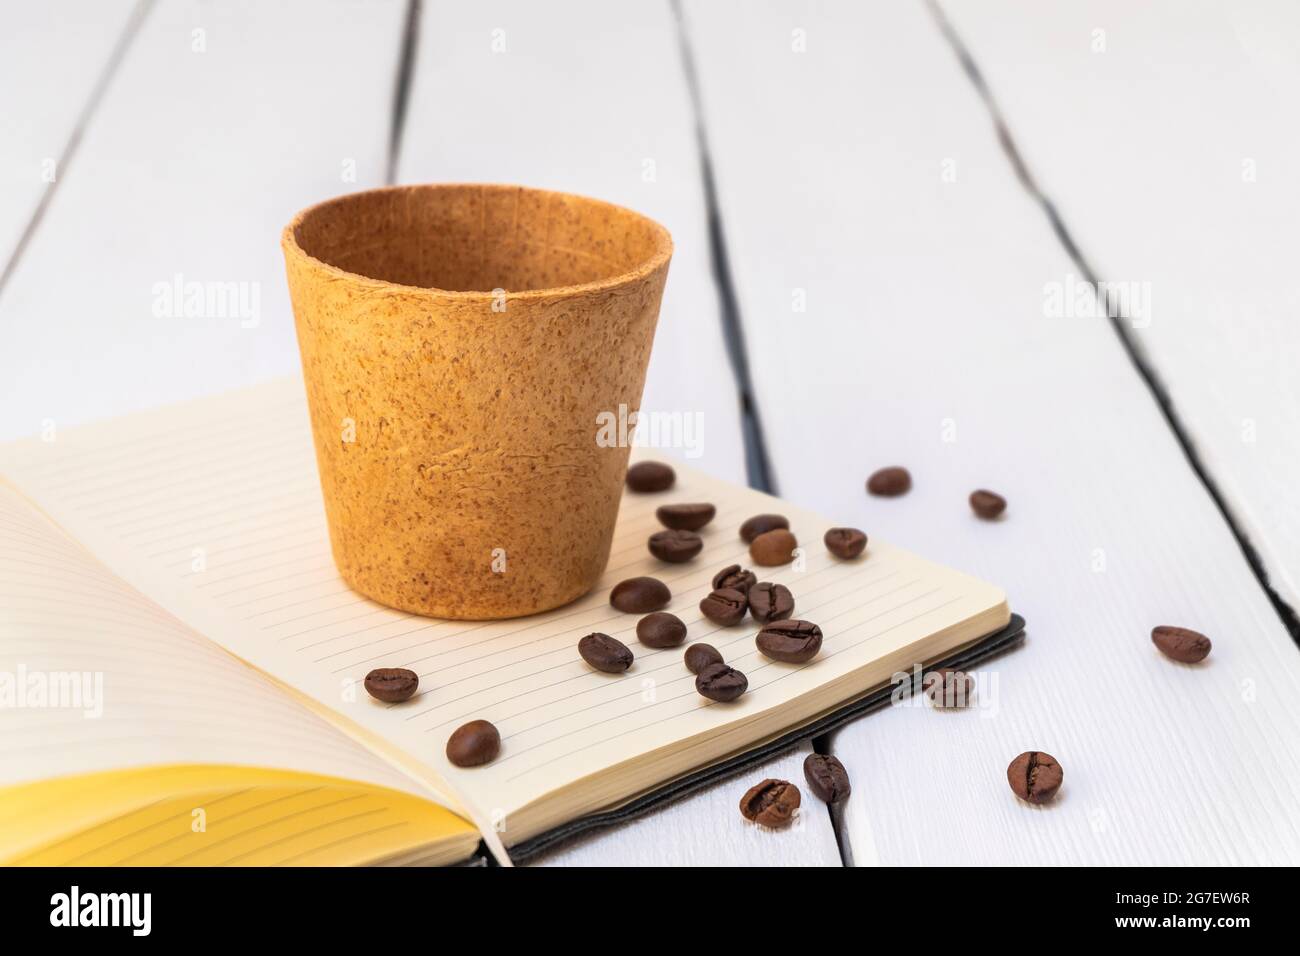 Tasse à café comestible avec haricots rôtis sur fond blanc. Image de style de vie, concept zéro déchet Banque D'Images